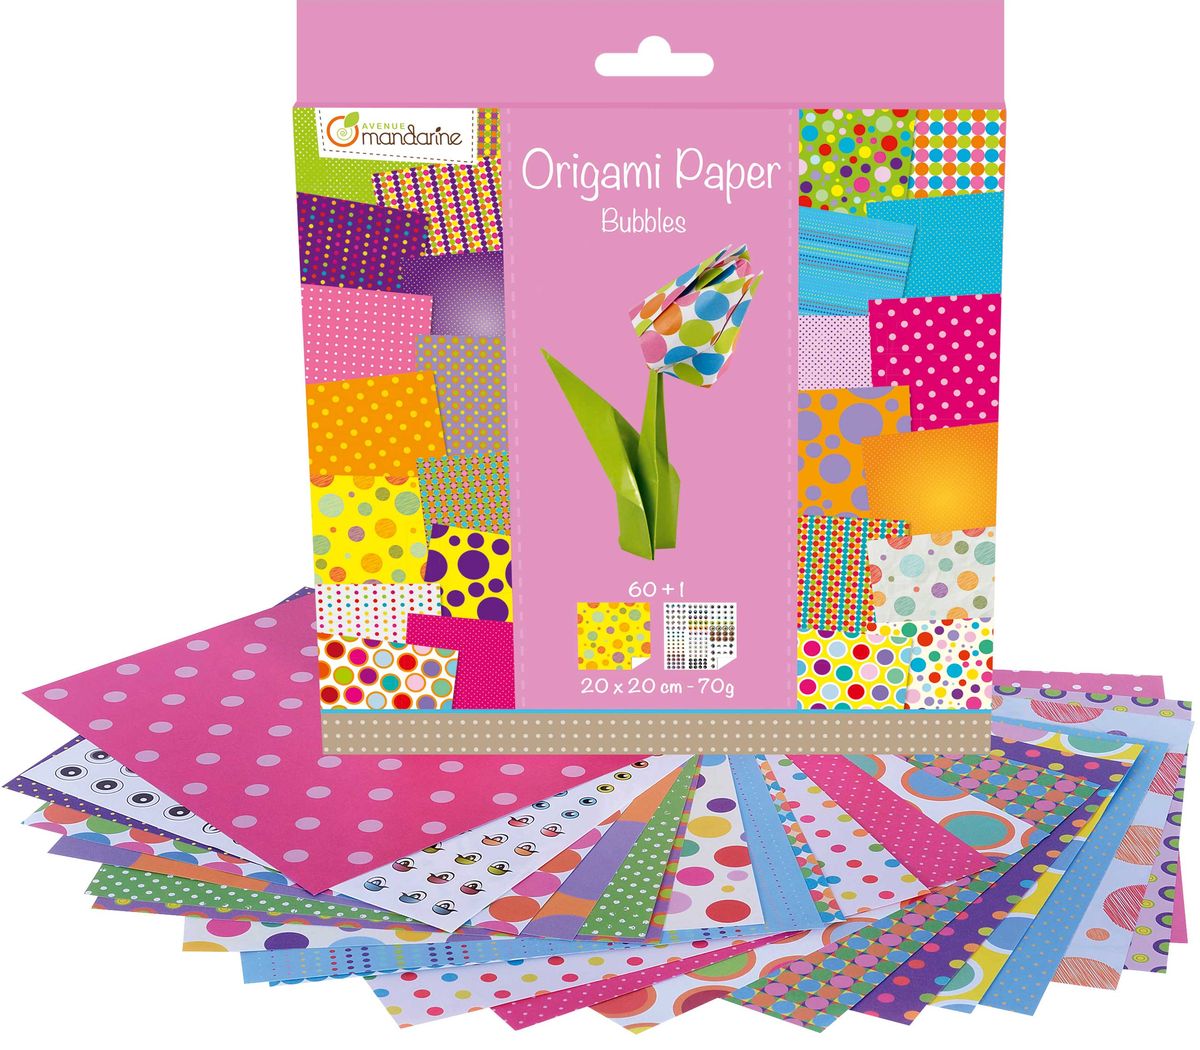 Carte Papier origami 20x20 cm Bubbles 60 arkuszy 